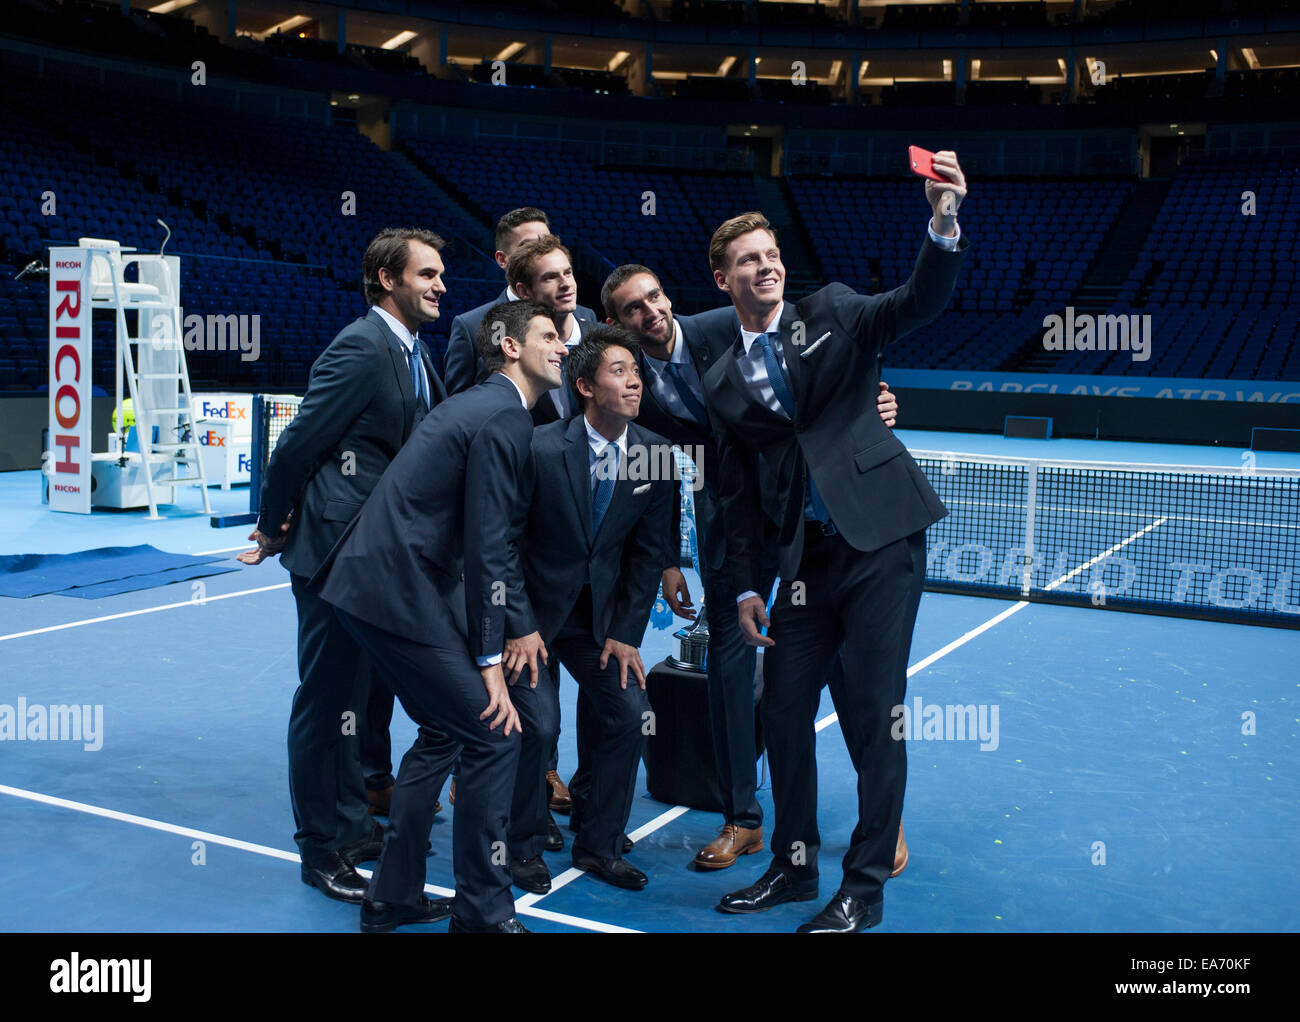 O2 Arena, Londra, Regno Unito. 7 Novembre, 2014. Il sesto anno consecutivo della prestigiosa ATP finals di Londra, gli otto migliori giocatori singoli in tutto il mondo rappresentano per un gruppo selfie presi da Tomas BERDYCH. Credito: Malcolm Park editoriale/Alamy Live News Foto Stock